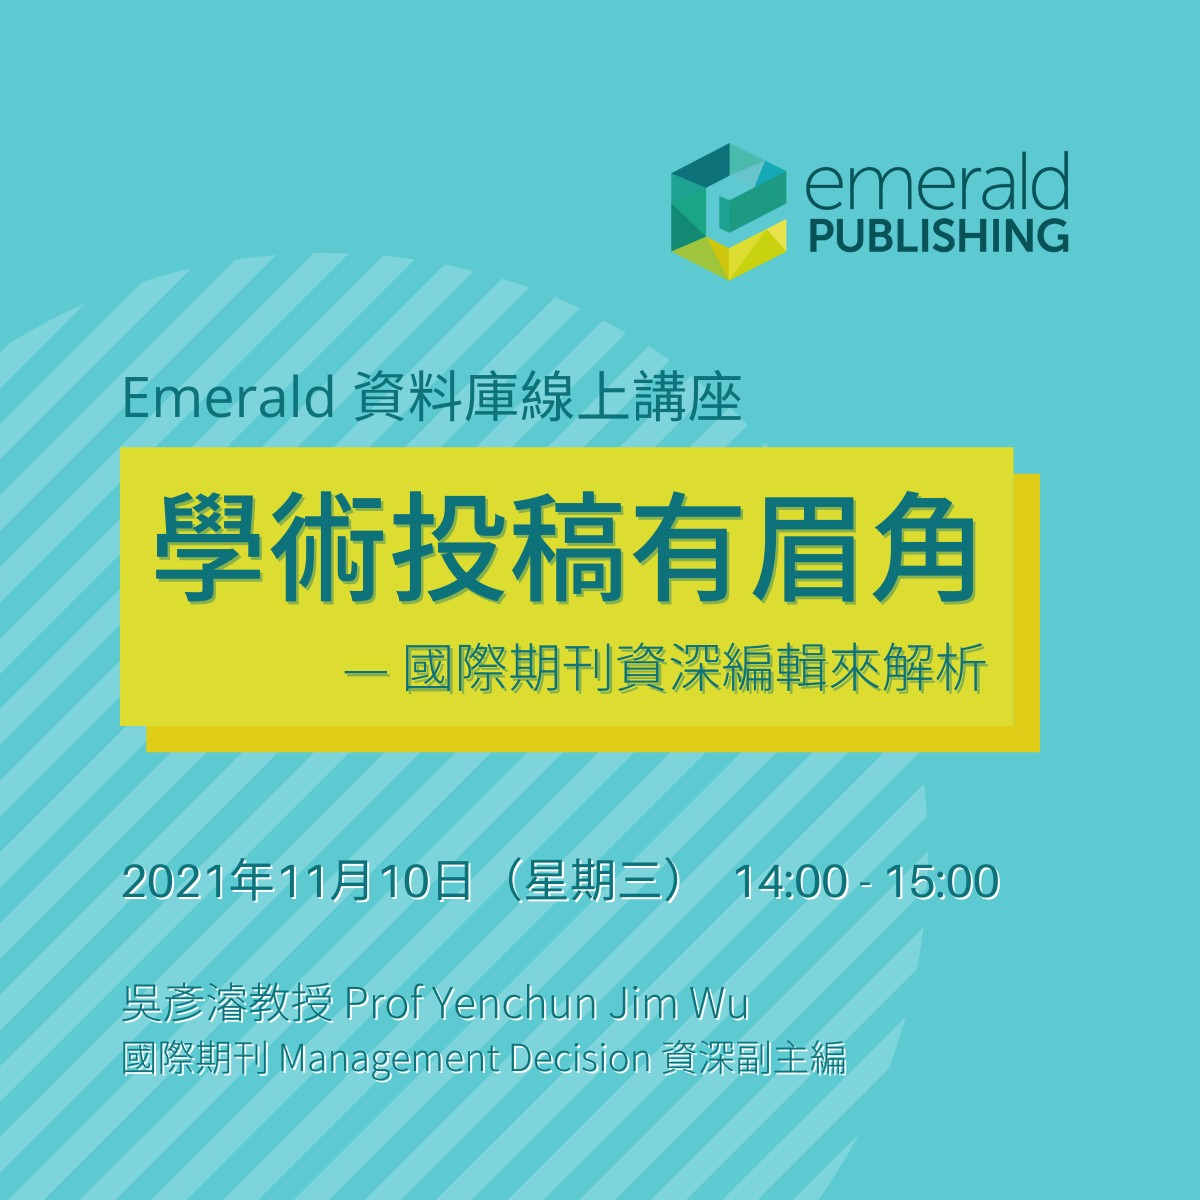 Emerald Webinar: 學術投稿有眉角 — 國際期刊資深編輯來解析